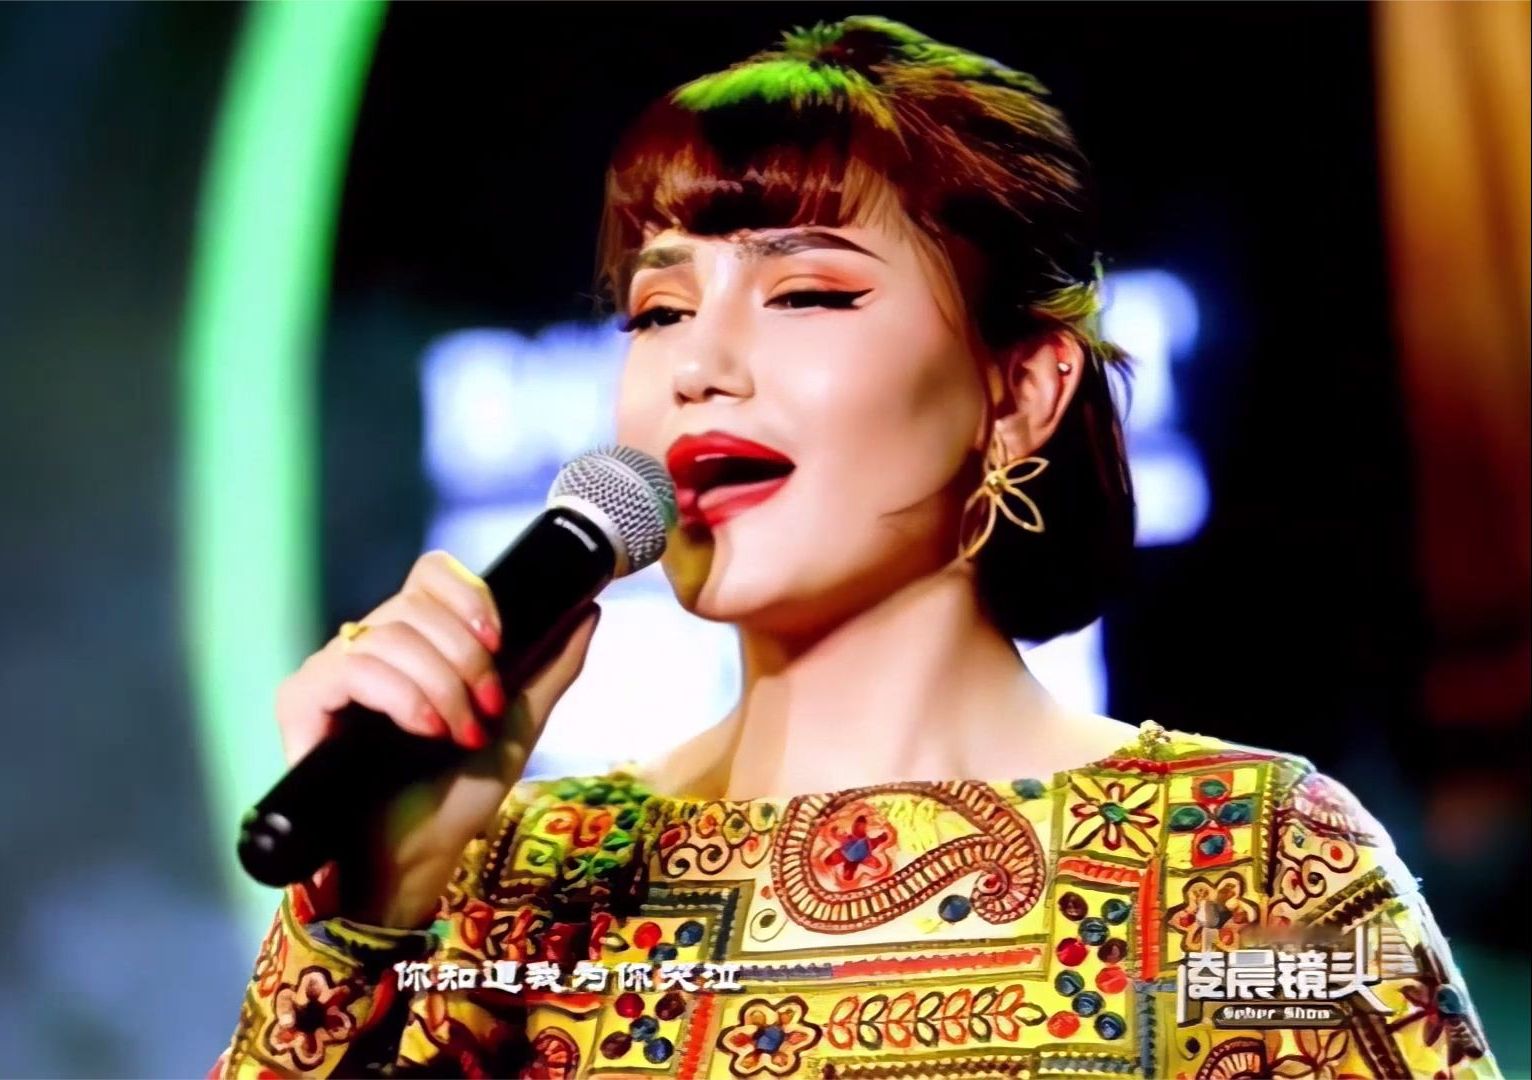 一首新疆美女歌手演唱的维吾尔族歌曲《你会爱的》soyup qalisen